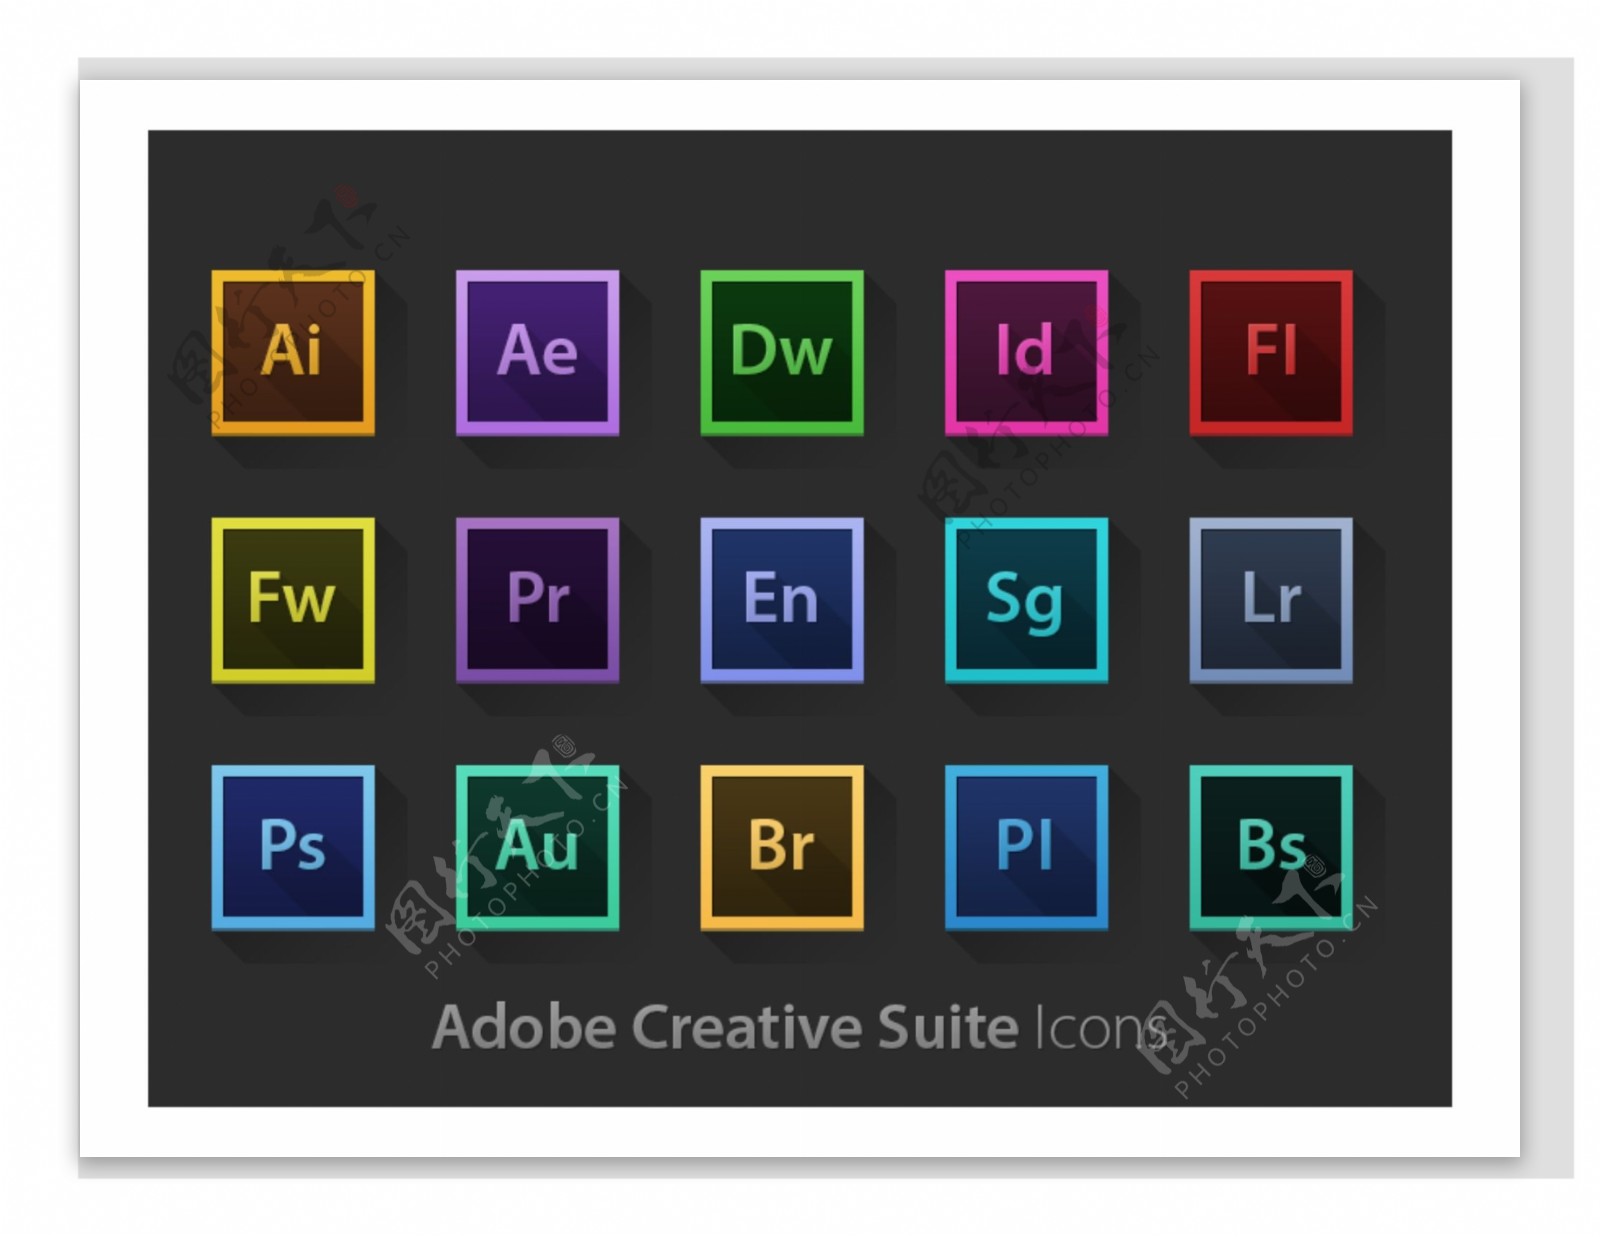 Adobe软件图标集锦